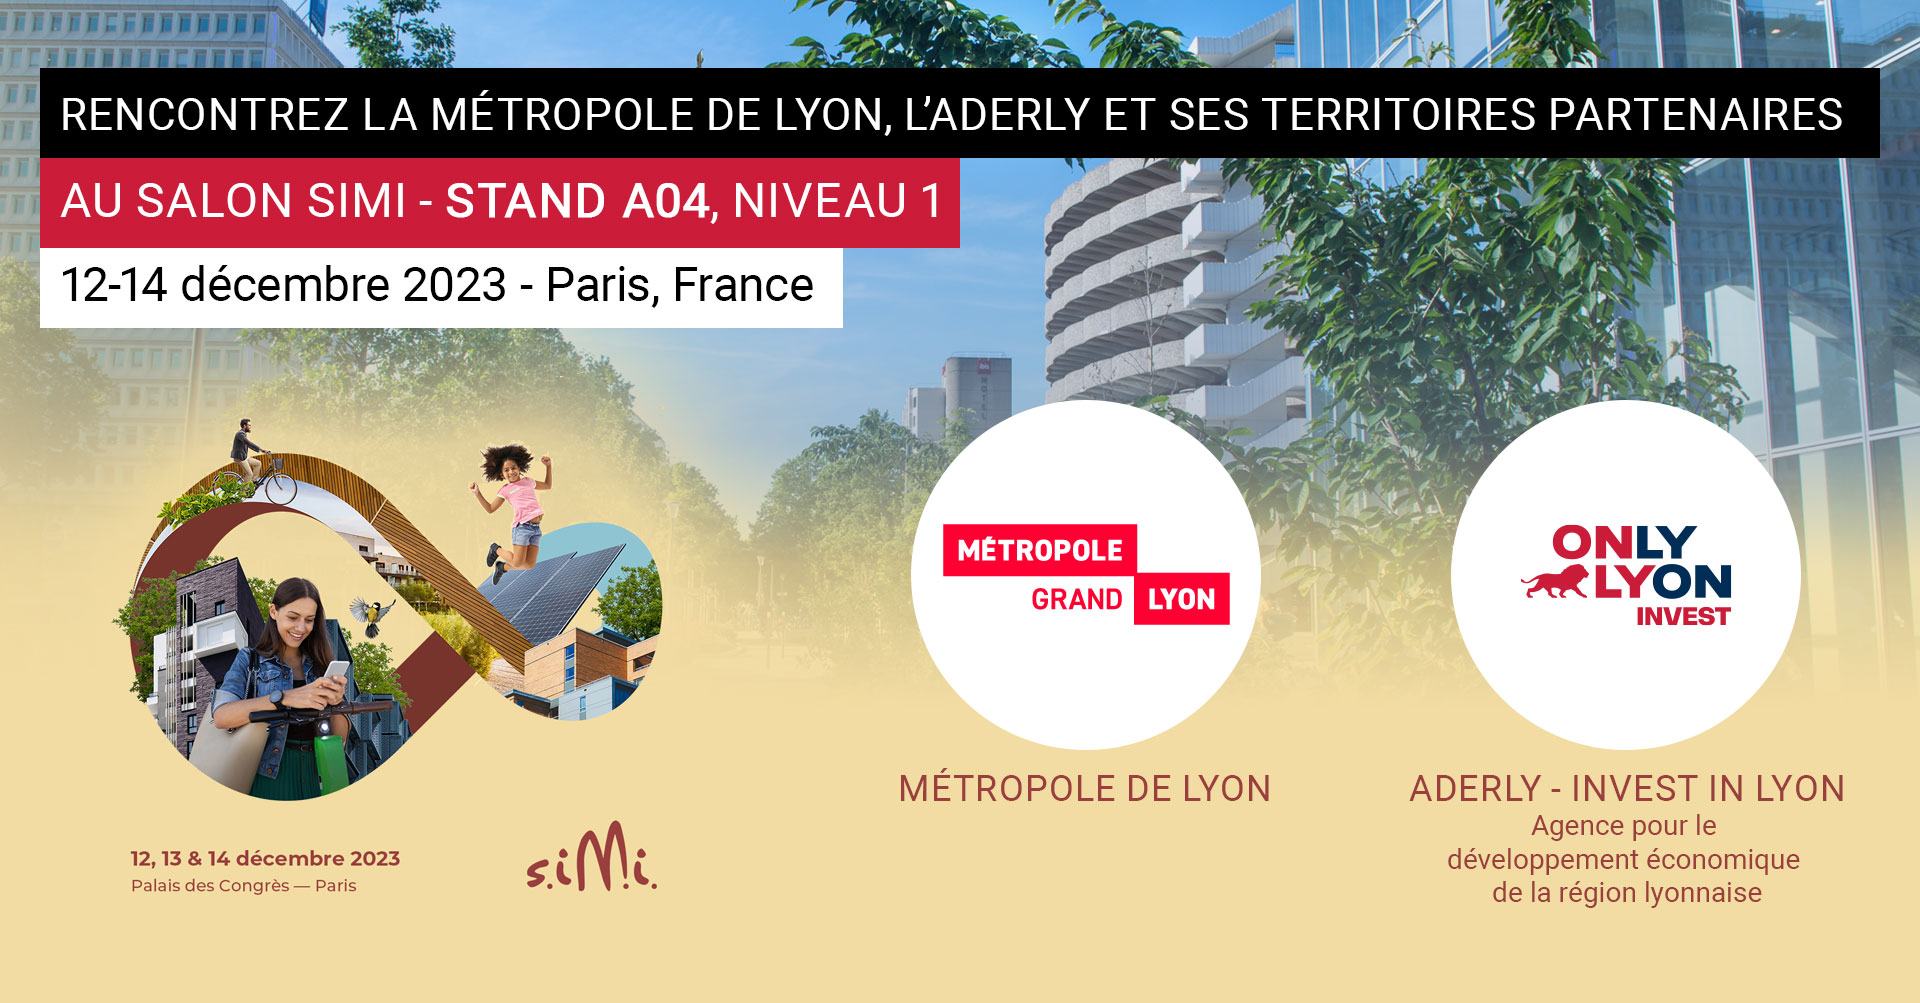 Rencontrez la Métropole de Lyon, l'Aderly et ses partenaires au Simi 2023, salon de l’immobilier d’entreprise, du 12 au 14 décembre 2023 à Paris (stand A04)